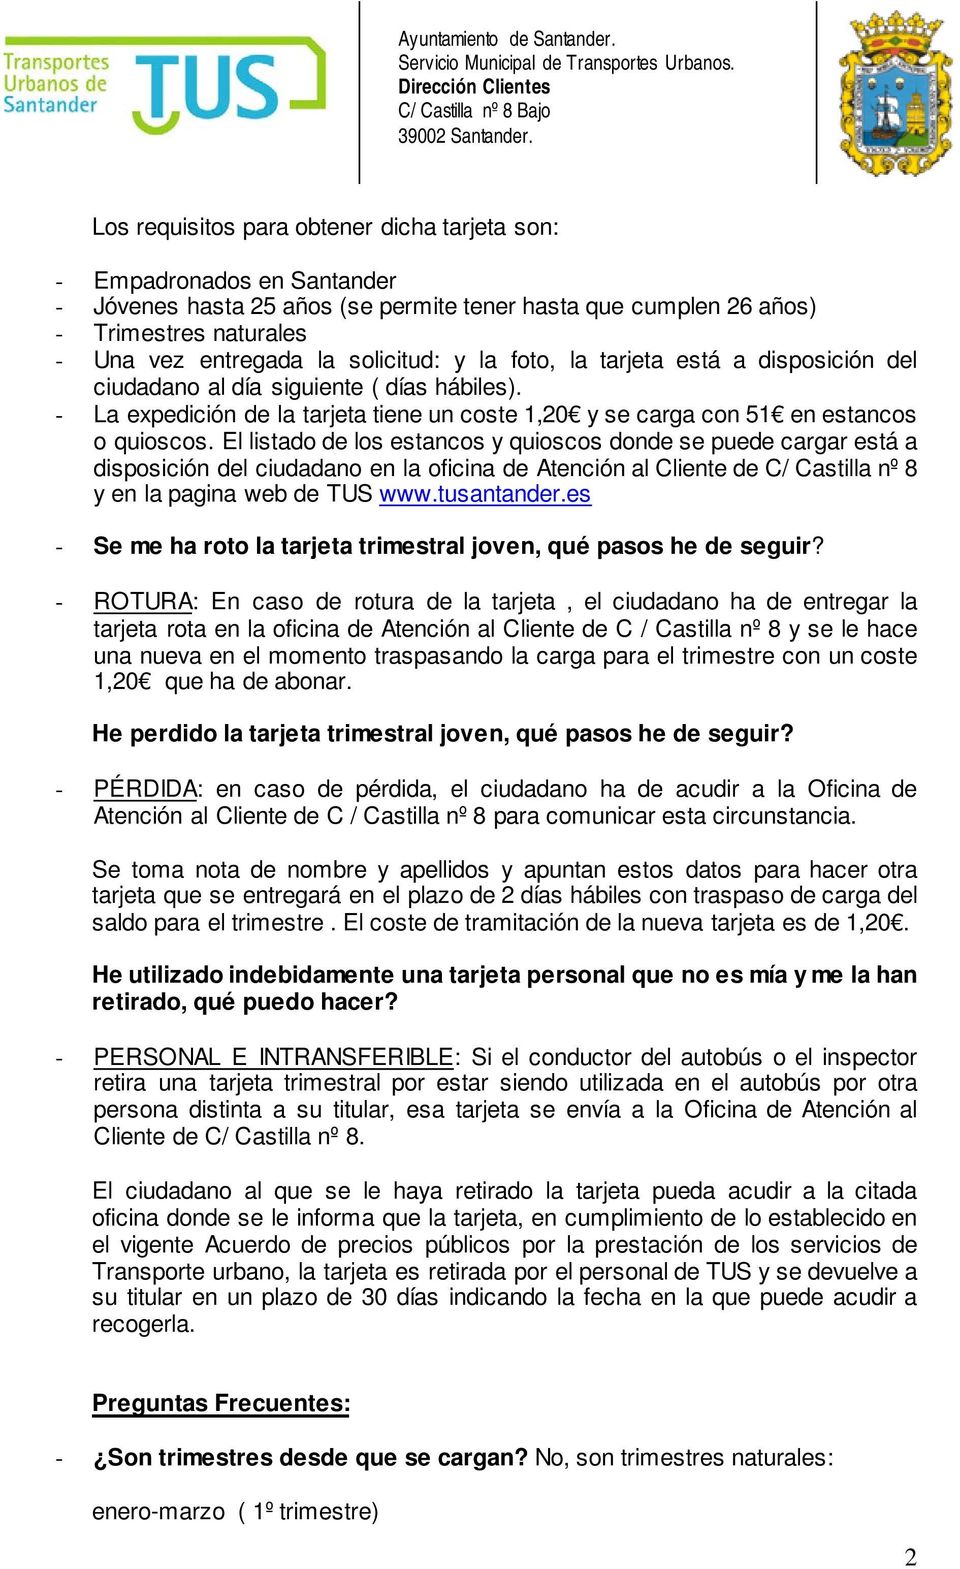 El listado de los estancos y quioscos donde se puede cargar está a disposición del ciudadano en la oficina de Atención al Cliente de C/ Castilla nº 8 y en la pagina web de TUS www.tusantander.